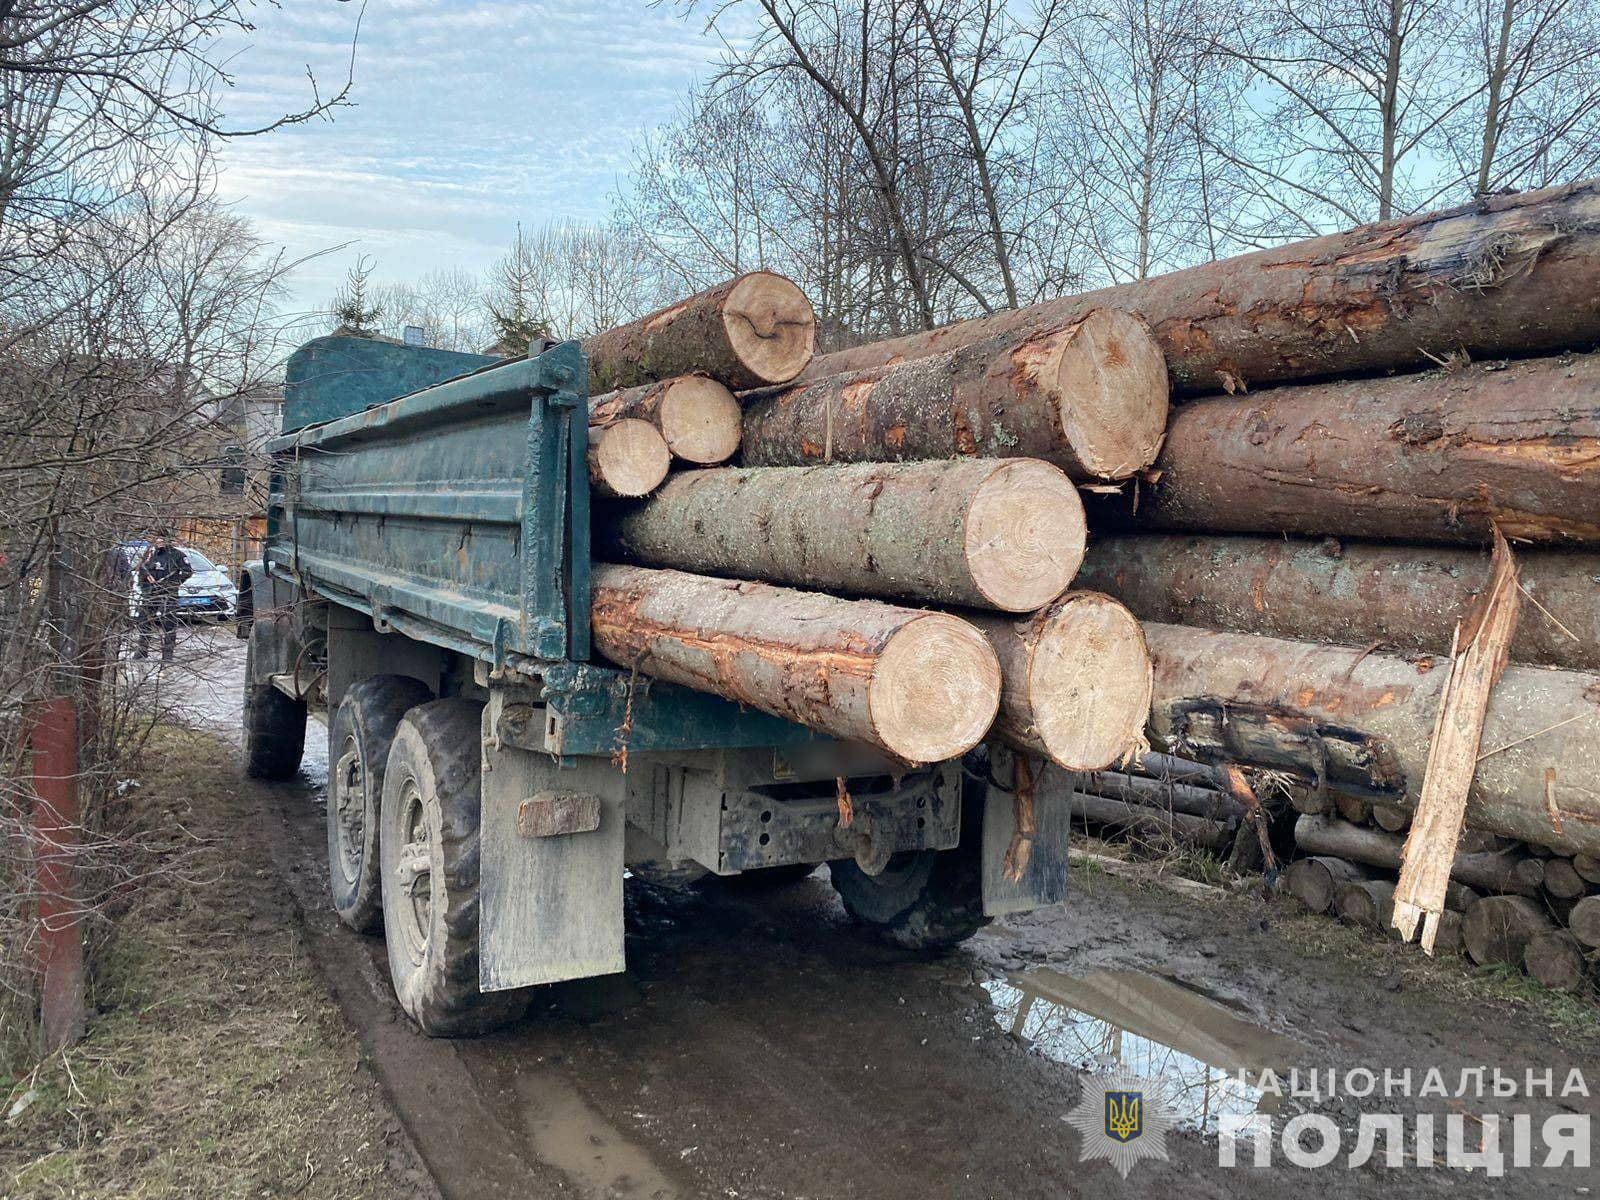  На Рахівщині поліція зафіксувала злочин проти довкілля: вилучено понад 40 кубометрів нелегальної деревини 0